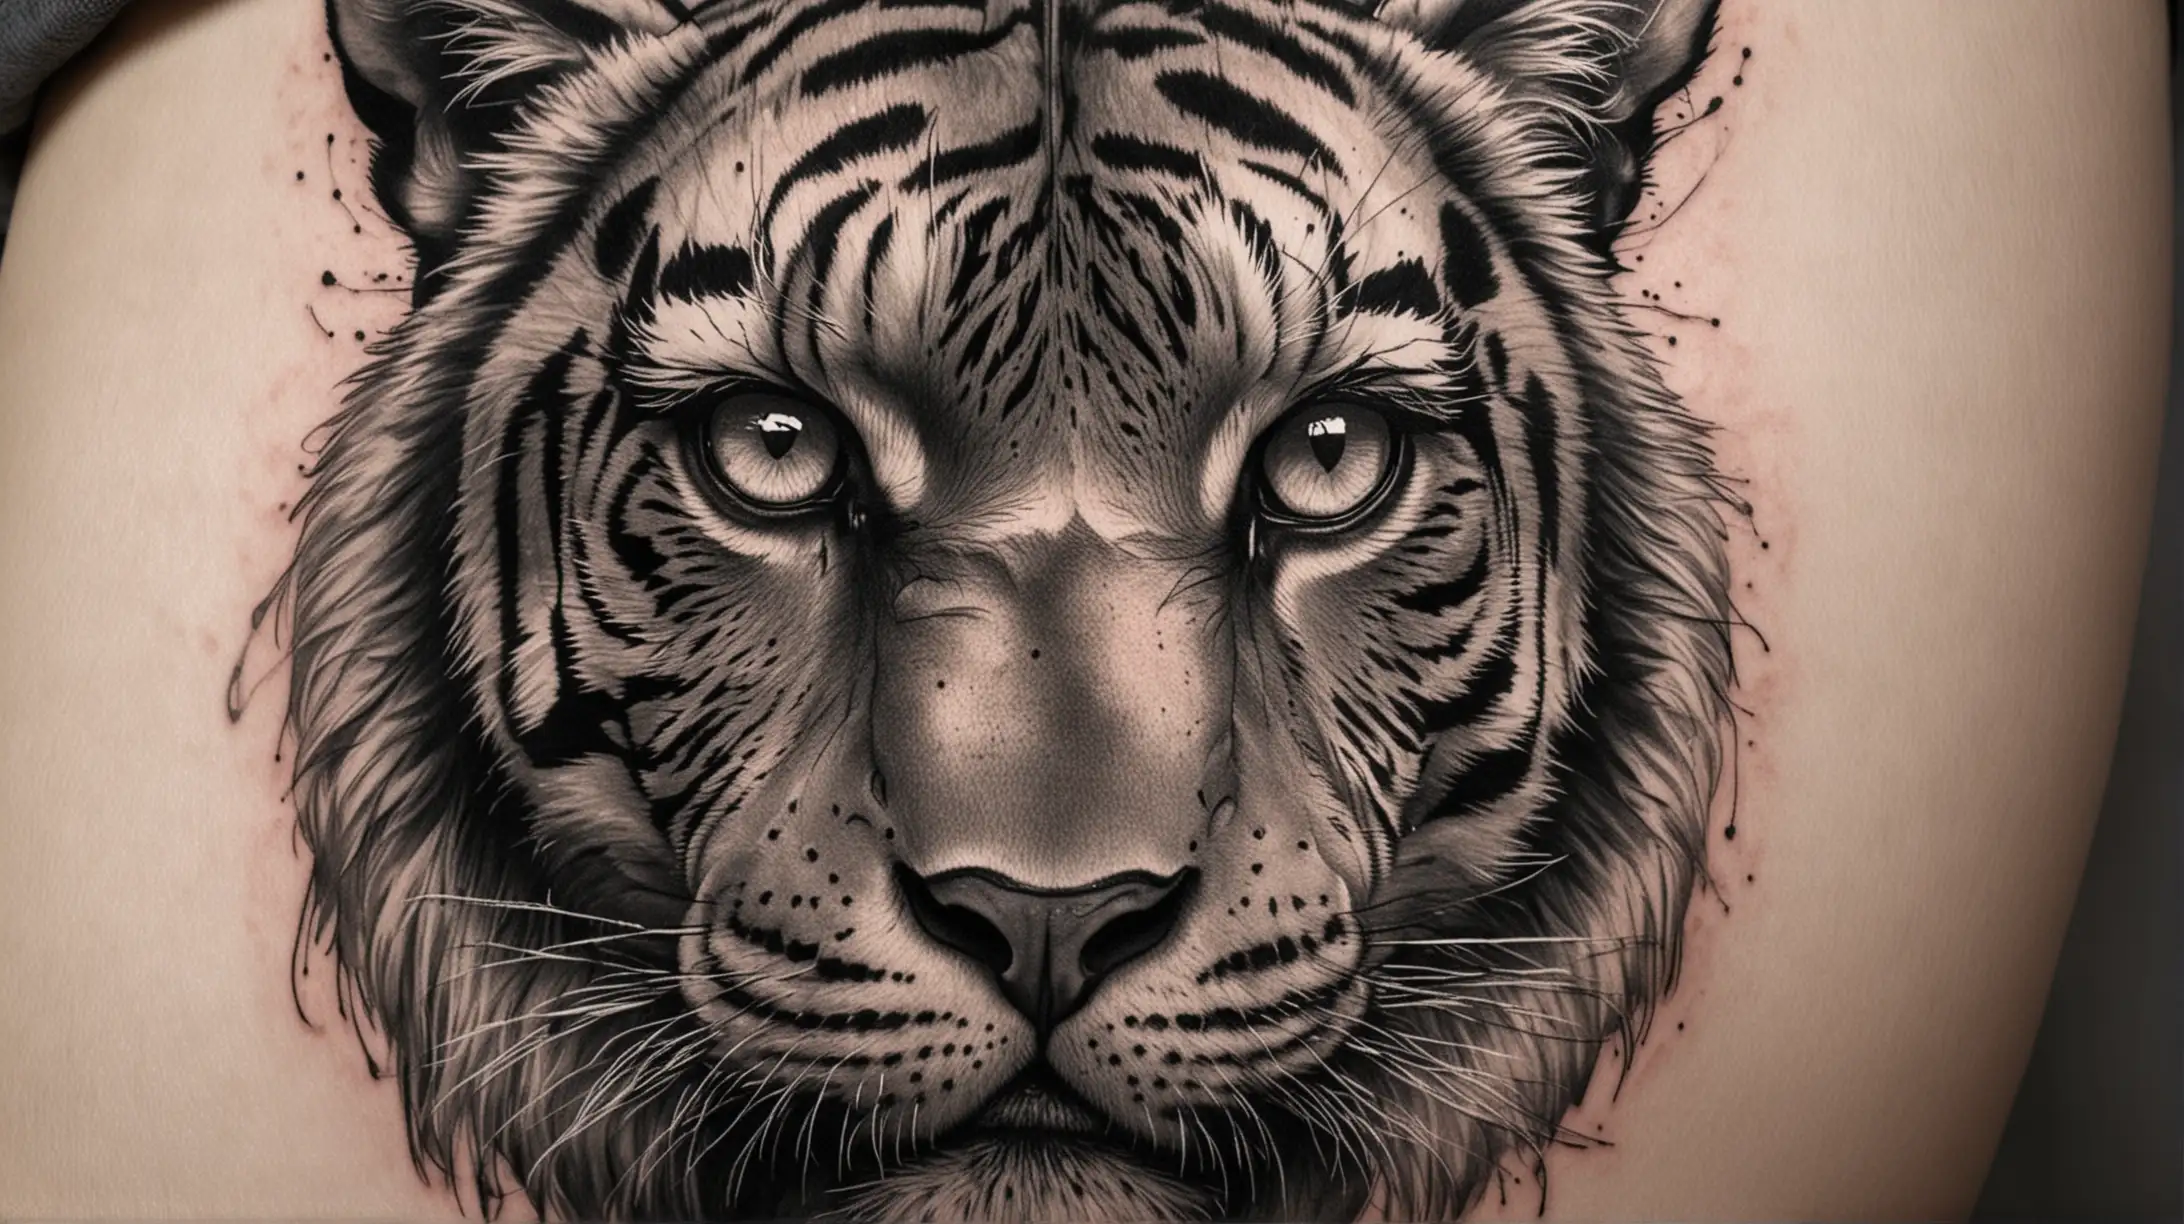 Erstelle ein realistisches, detailreiches Tattoo-Design in Black und Gray, das einen Ausschnitt eines Tigers zeigt, auf dem nur seine Augen zu sehen sind. Achte darauf, dass das Design kontrastreich ist, um die Intensität der Augen des Tigers hervorzuheben und eine faszinierende und ästhetische Wirkung zu erzielen.